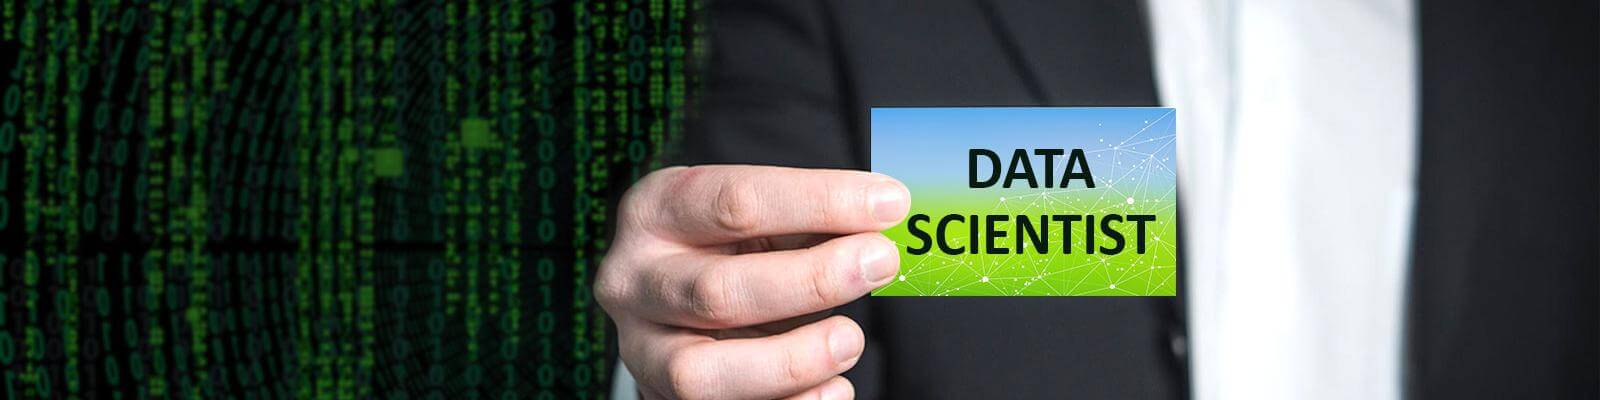 Data-Scientist_Banner